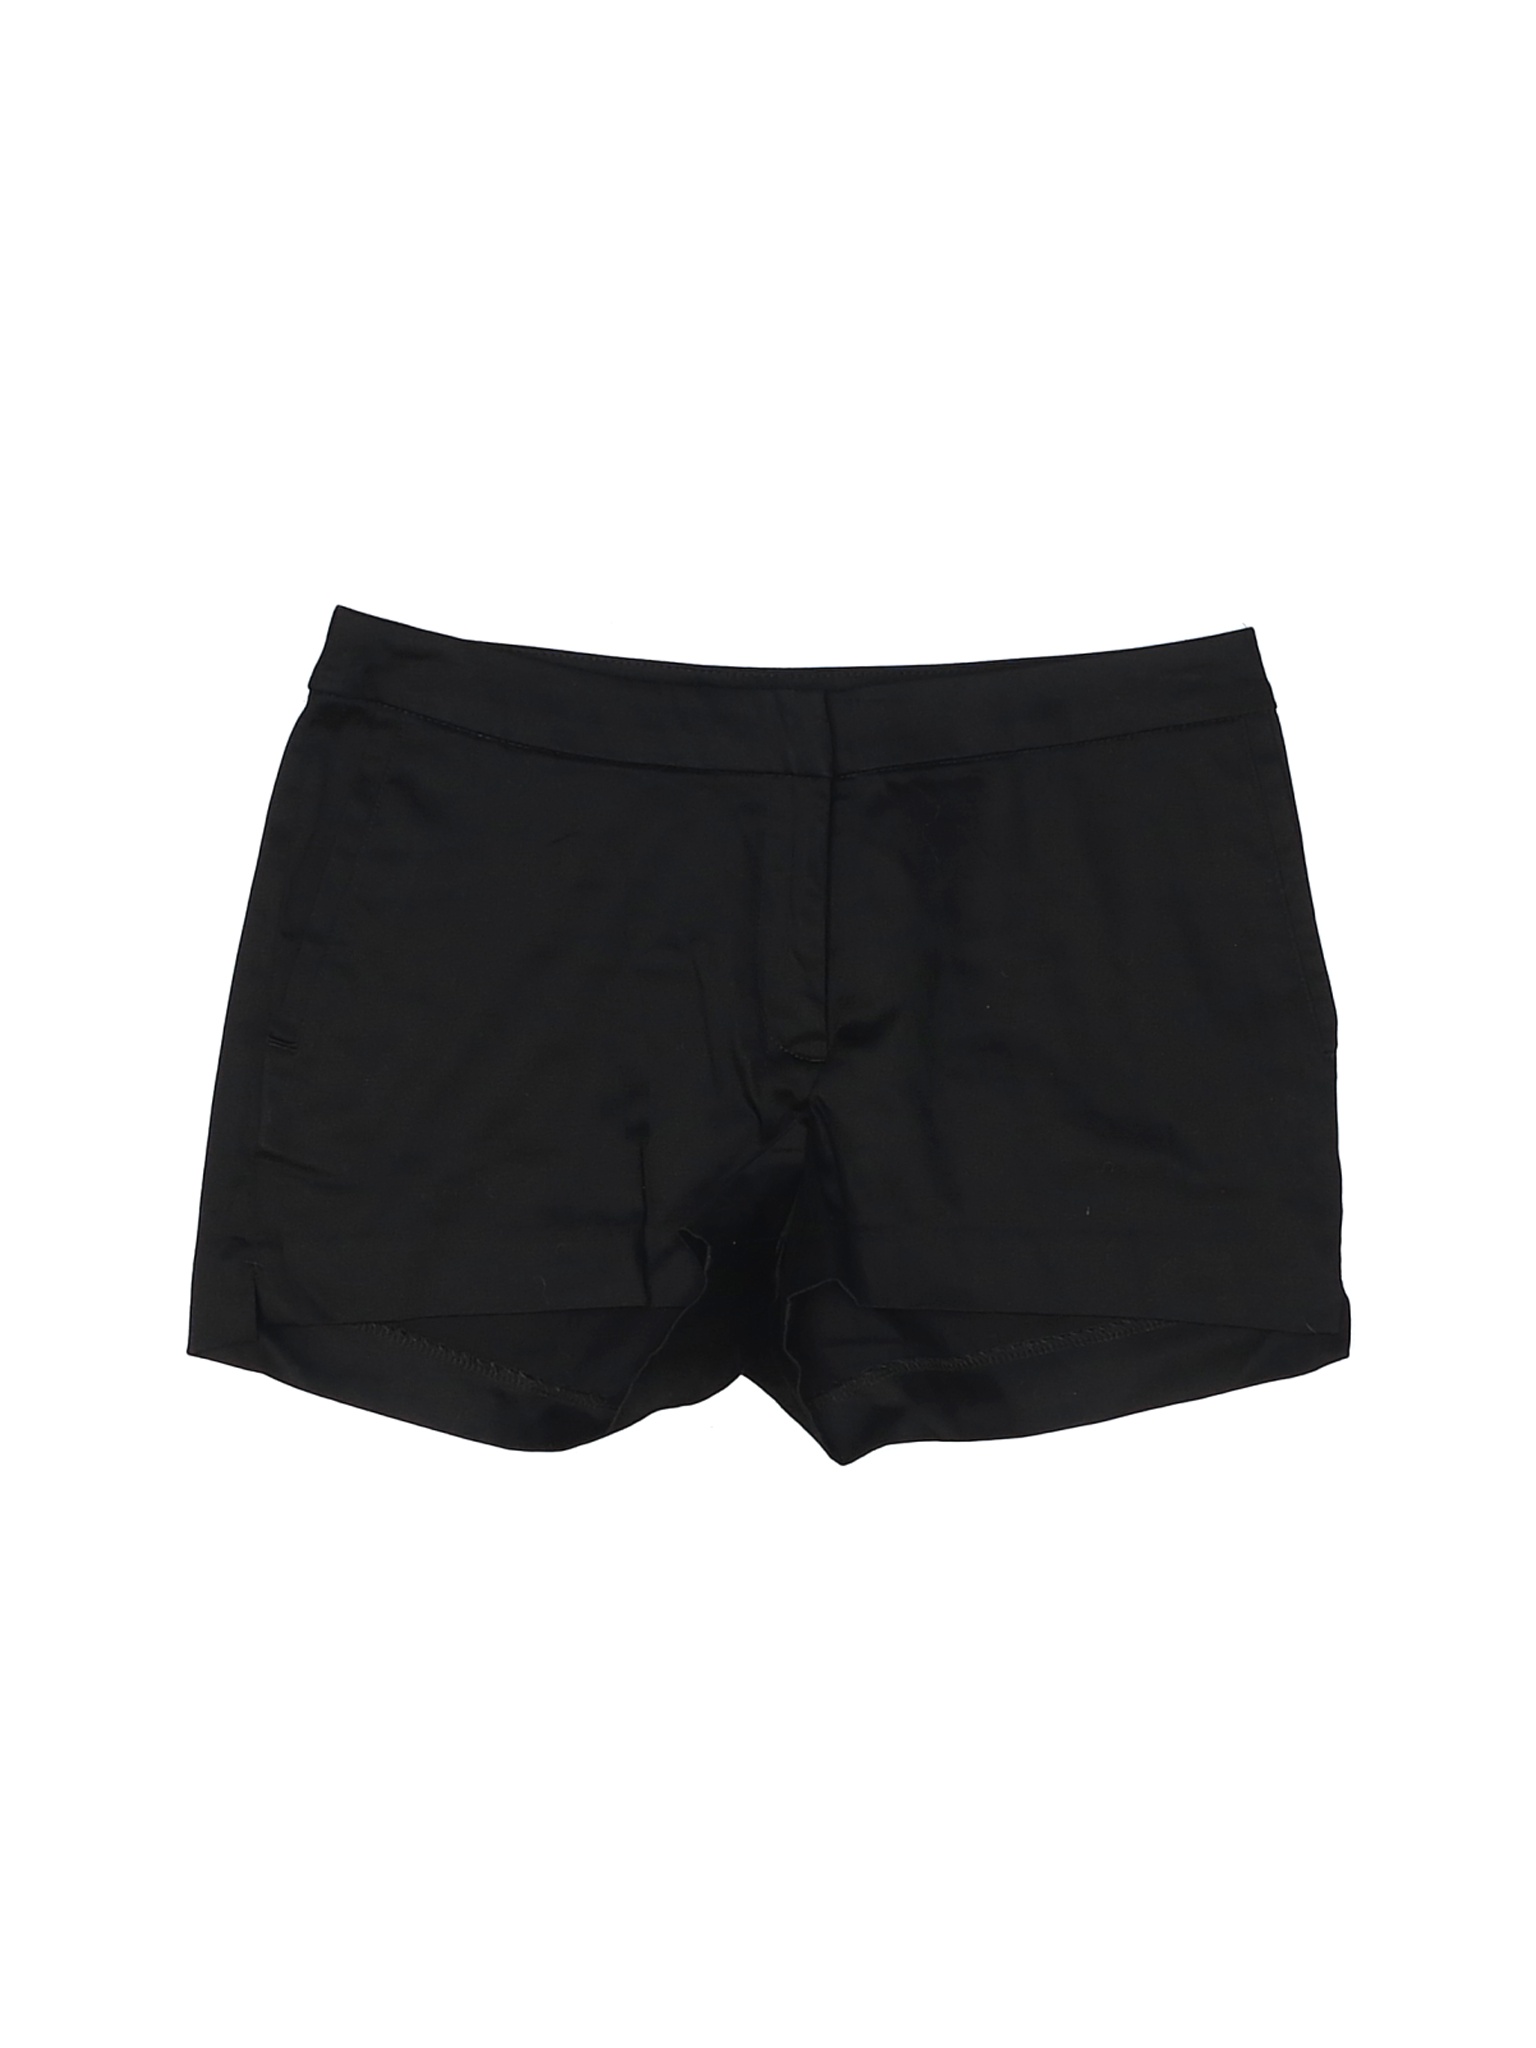 H&M Women Black Dressy Shorts 6 | eBay